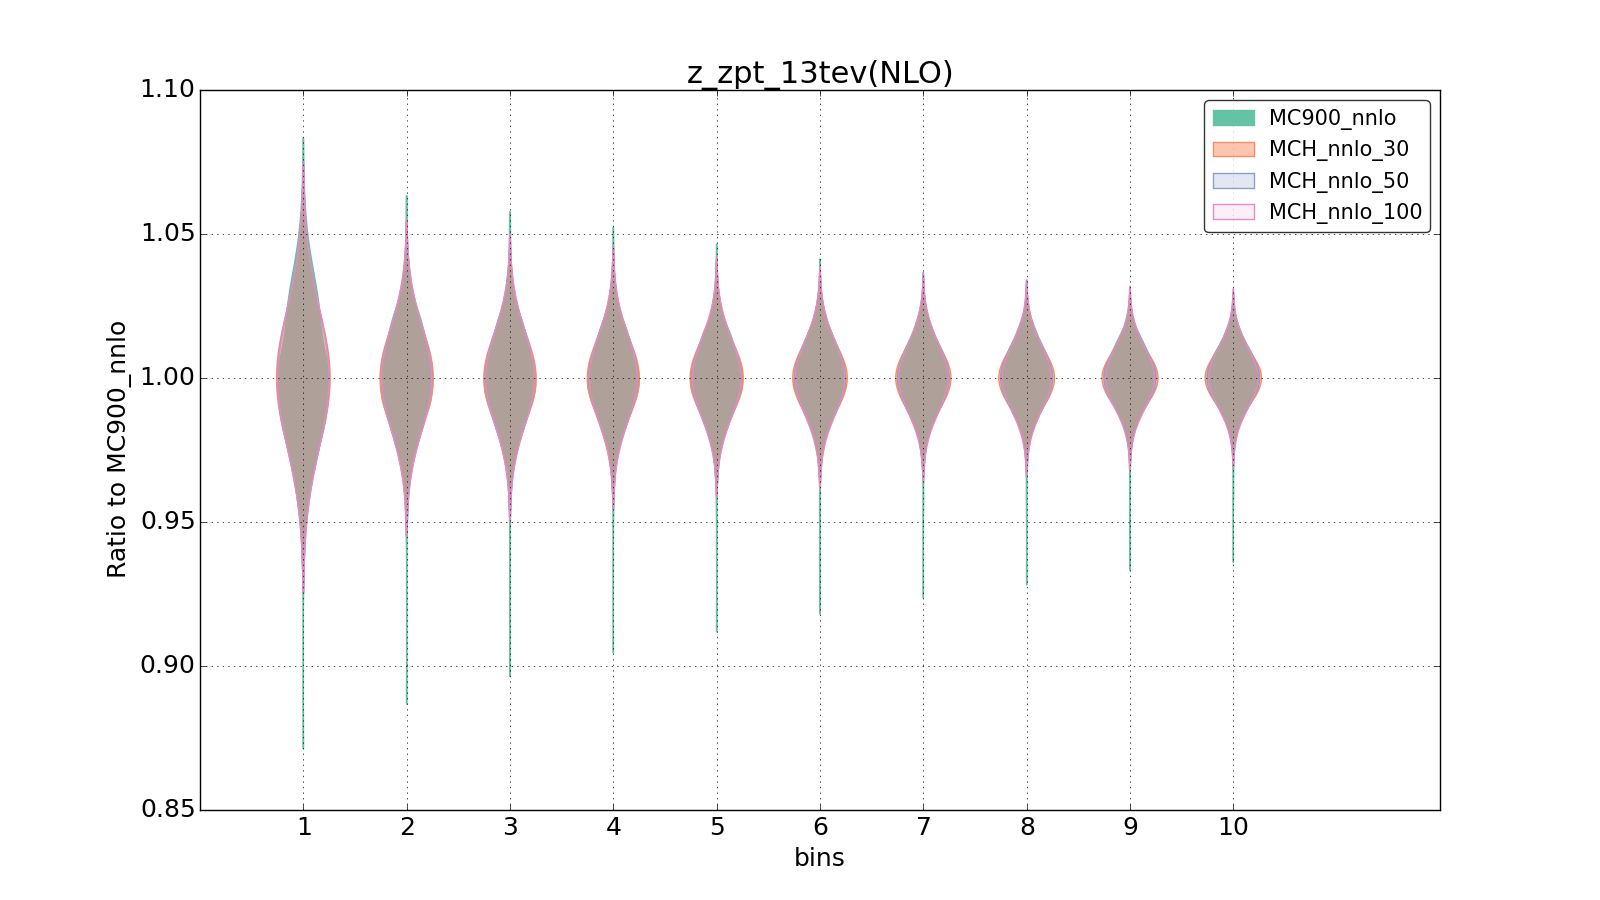 figure plots/pheno_new/NNLO/violinplot_z_zpt_13tev(NLO).png